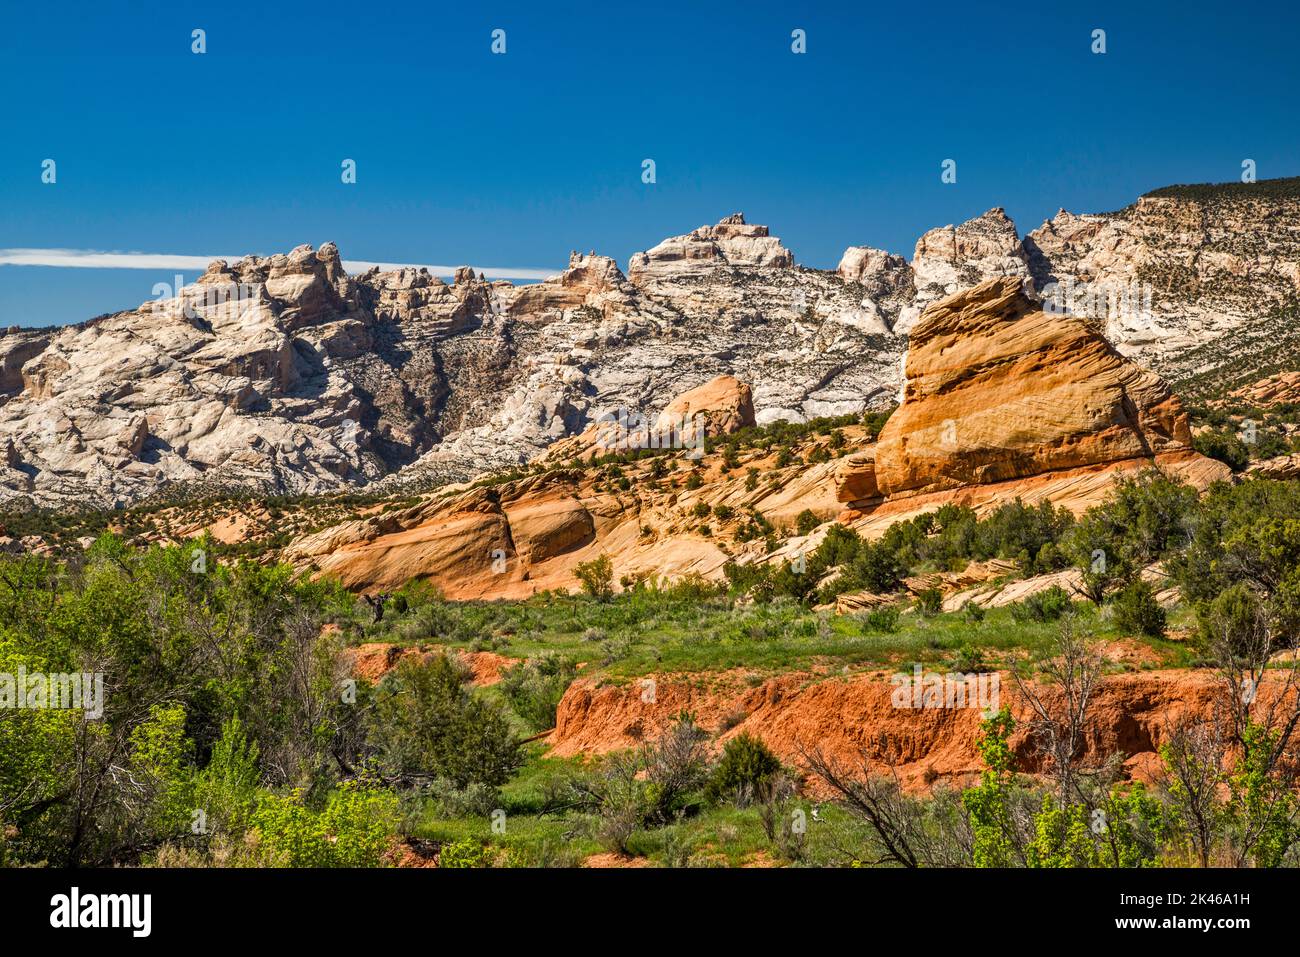 Rocas en la meseta de Yampa, la montaña de Split en la distancia, vista desde Cub Creek Road, el Monumento Nacional de los Dinosaurios, Utah, EE.UU Foto de stock